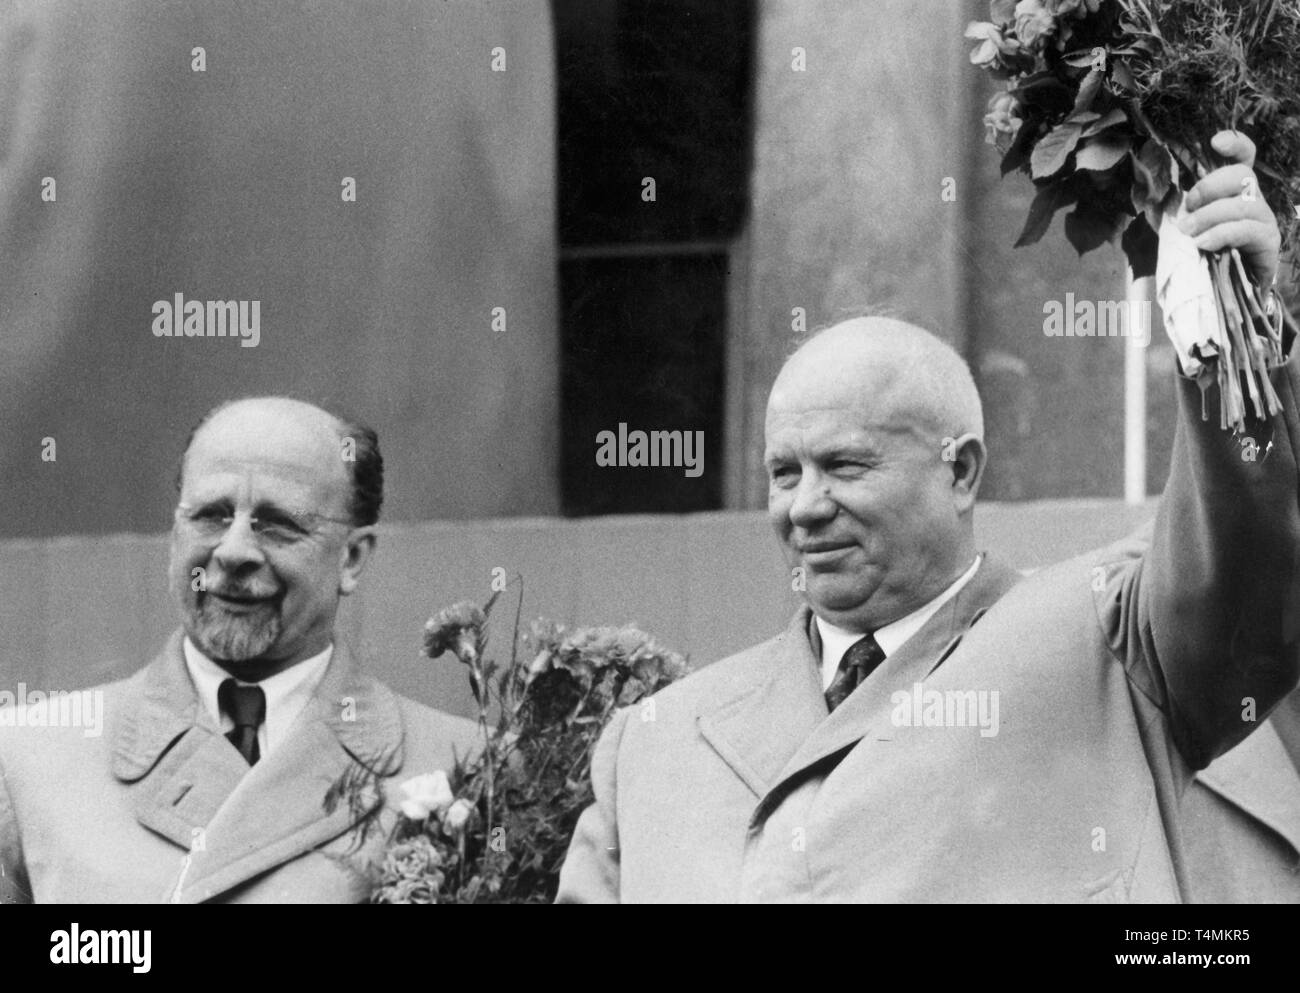 Walter Ulbricht (L), Premier Secrétaire du Comité central du SED, et Nikita Khrouchtchev (R), Premier Secrétaire du Comité central du Parti communiste de l'Union soviétique, à la gare de l'Est de Berlin le 08 juillet 1958. Khrouchtchev a été invité à la cinquième conférence des parties de la SED. Dans le monde d'utilisation | Banque D'Images